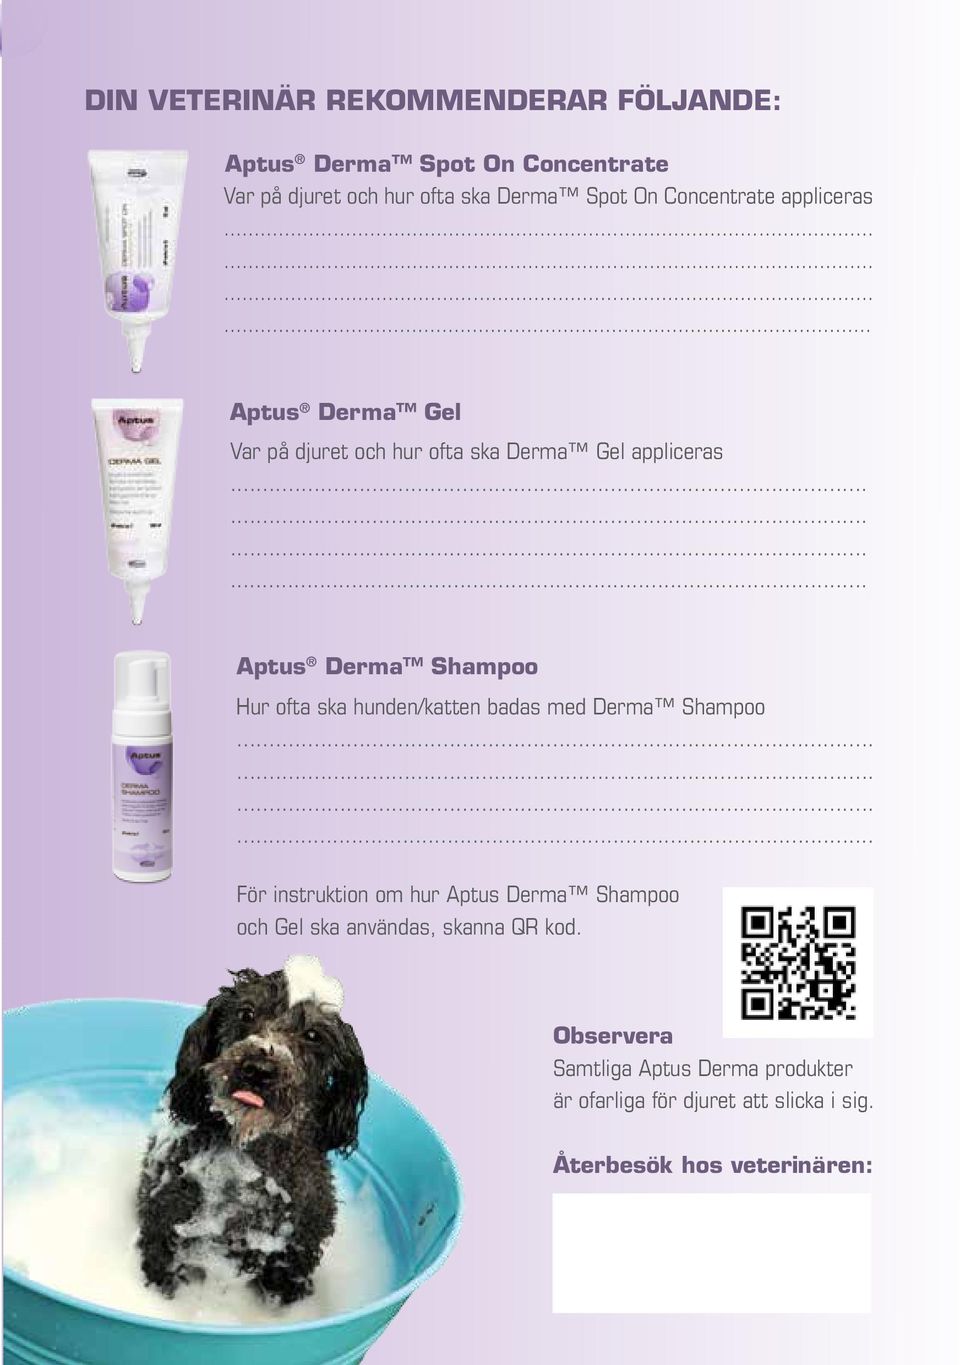 Aptus Derma Shampoo Hur ofta ska hunden/katten badas med Derma Shampoo.